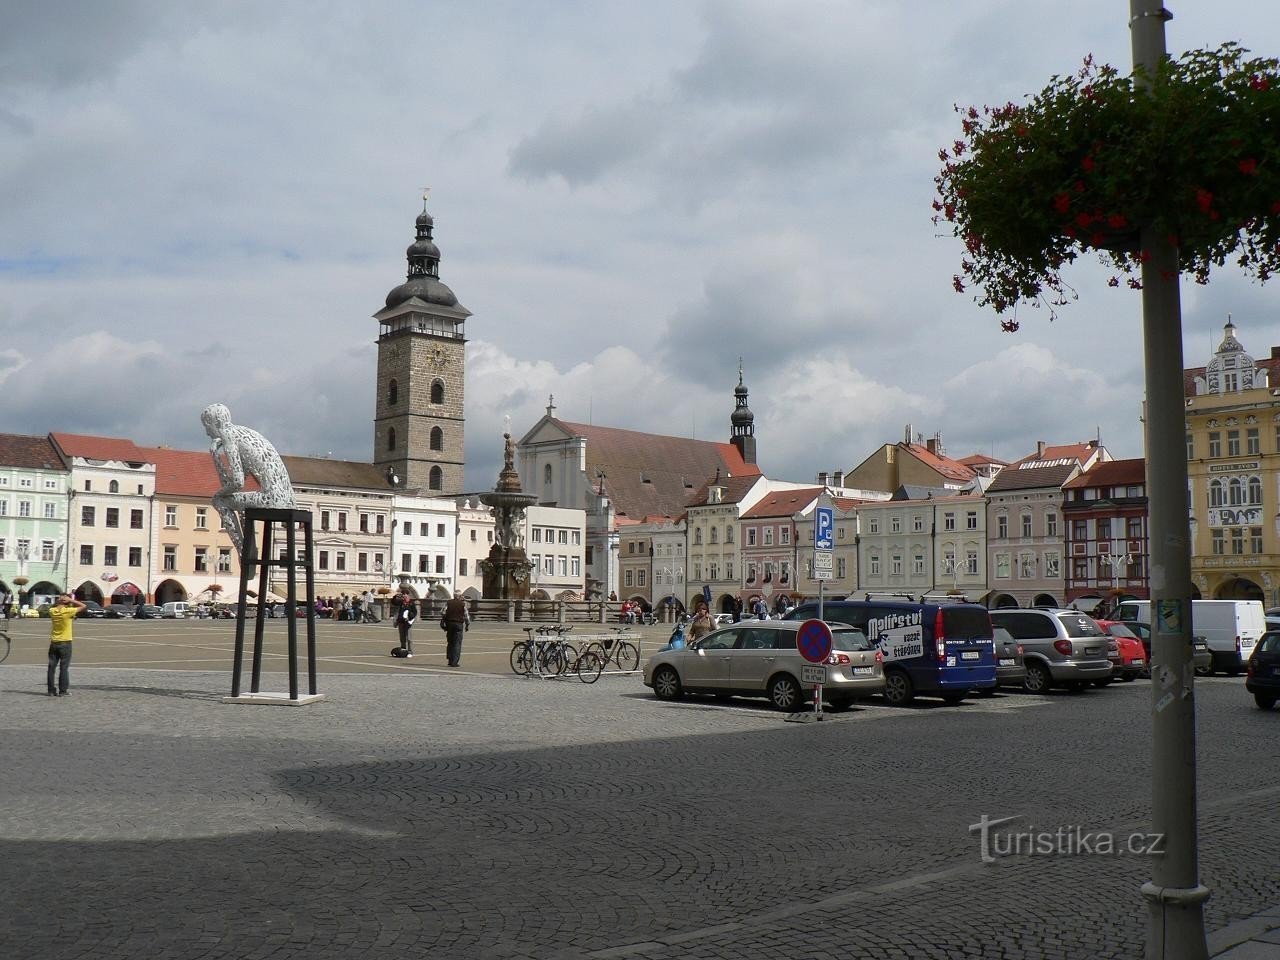 Czeskie Budziejowice, katedra od strony rynku